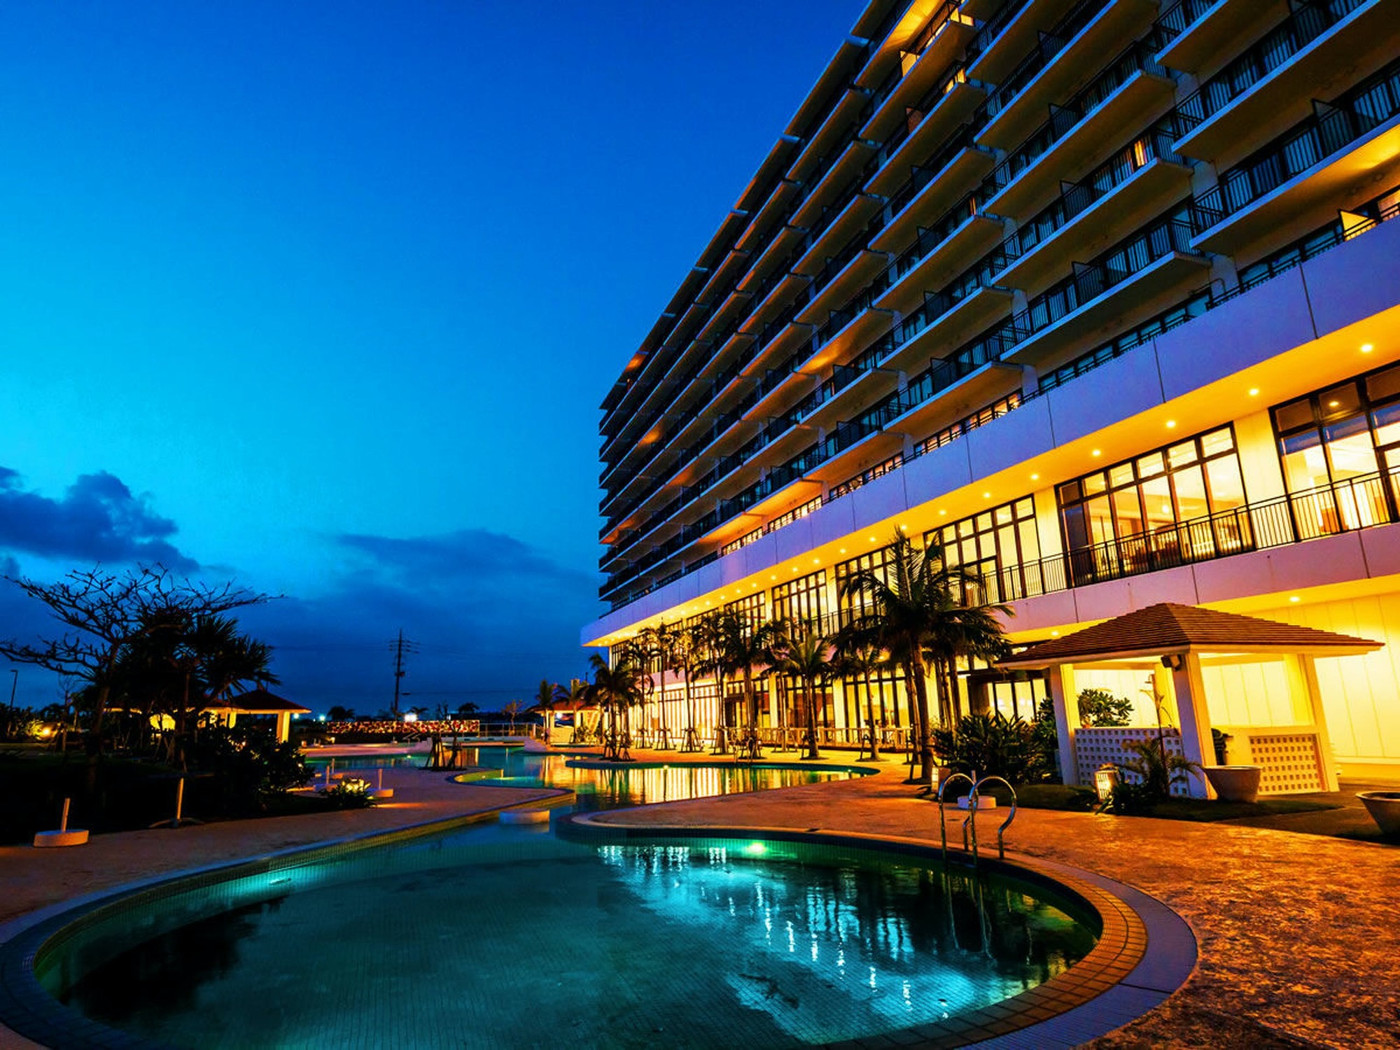 ナイトプールで沖縄の夜をたっぷり楽しんじゃいましょう♪2139043